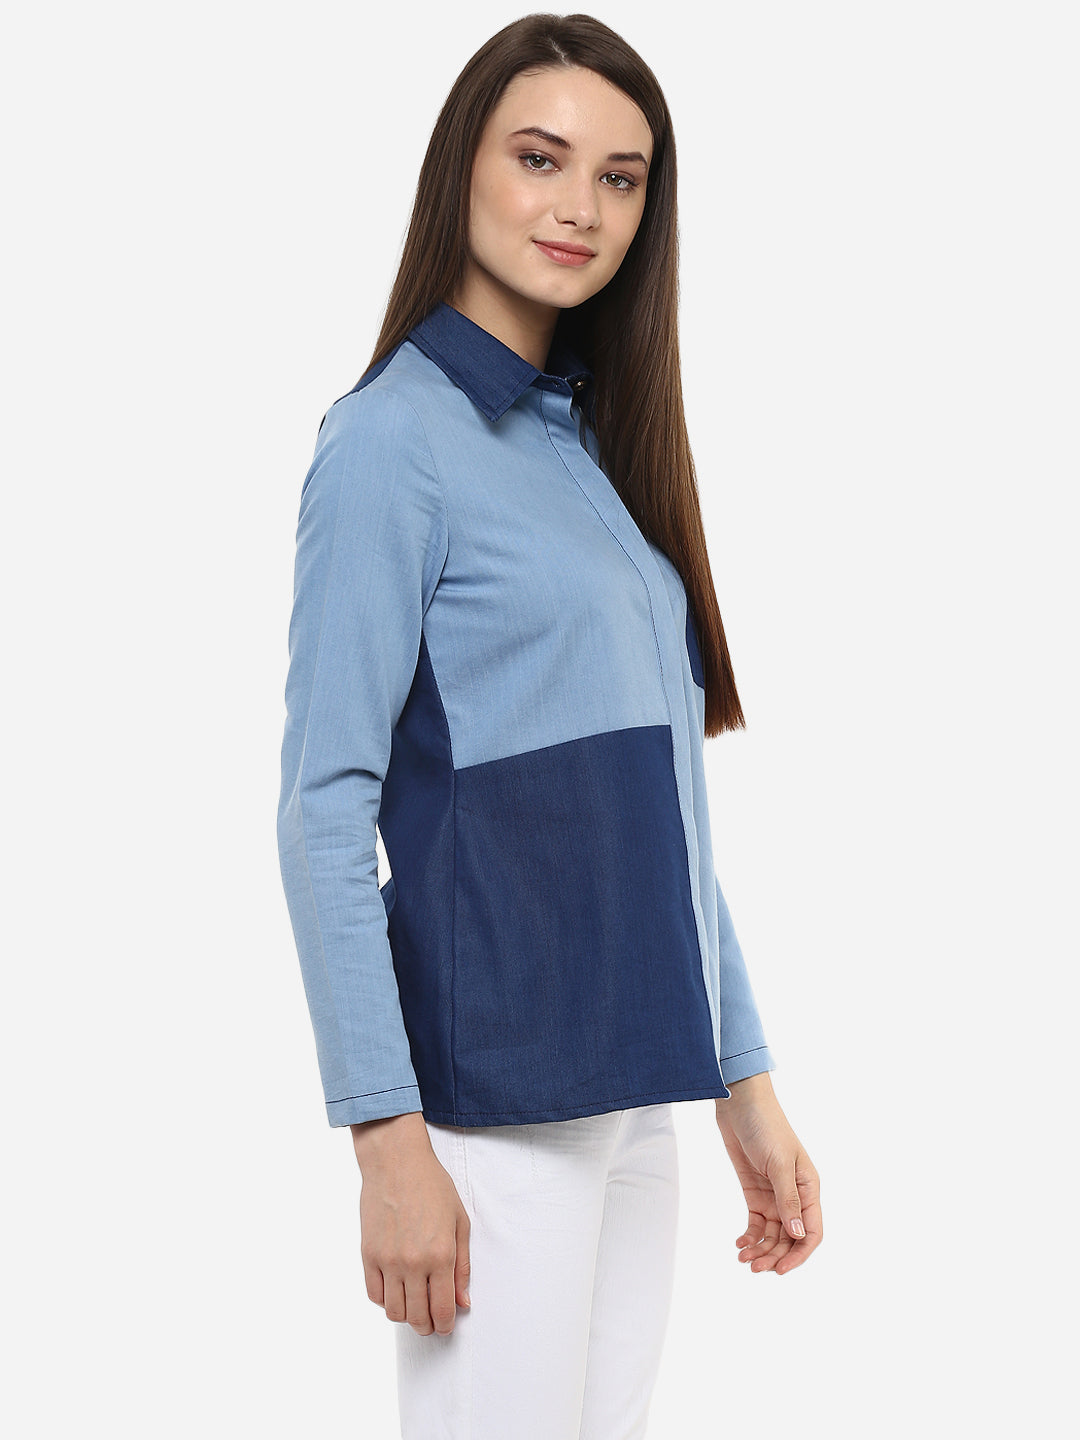 Women's Denim Light and Dark Blue Patch Shirt